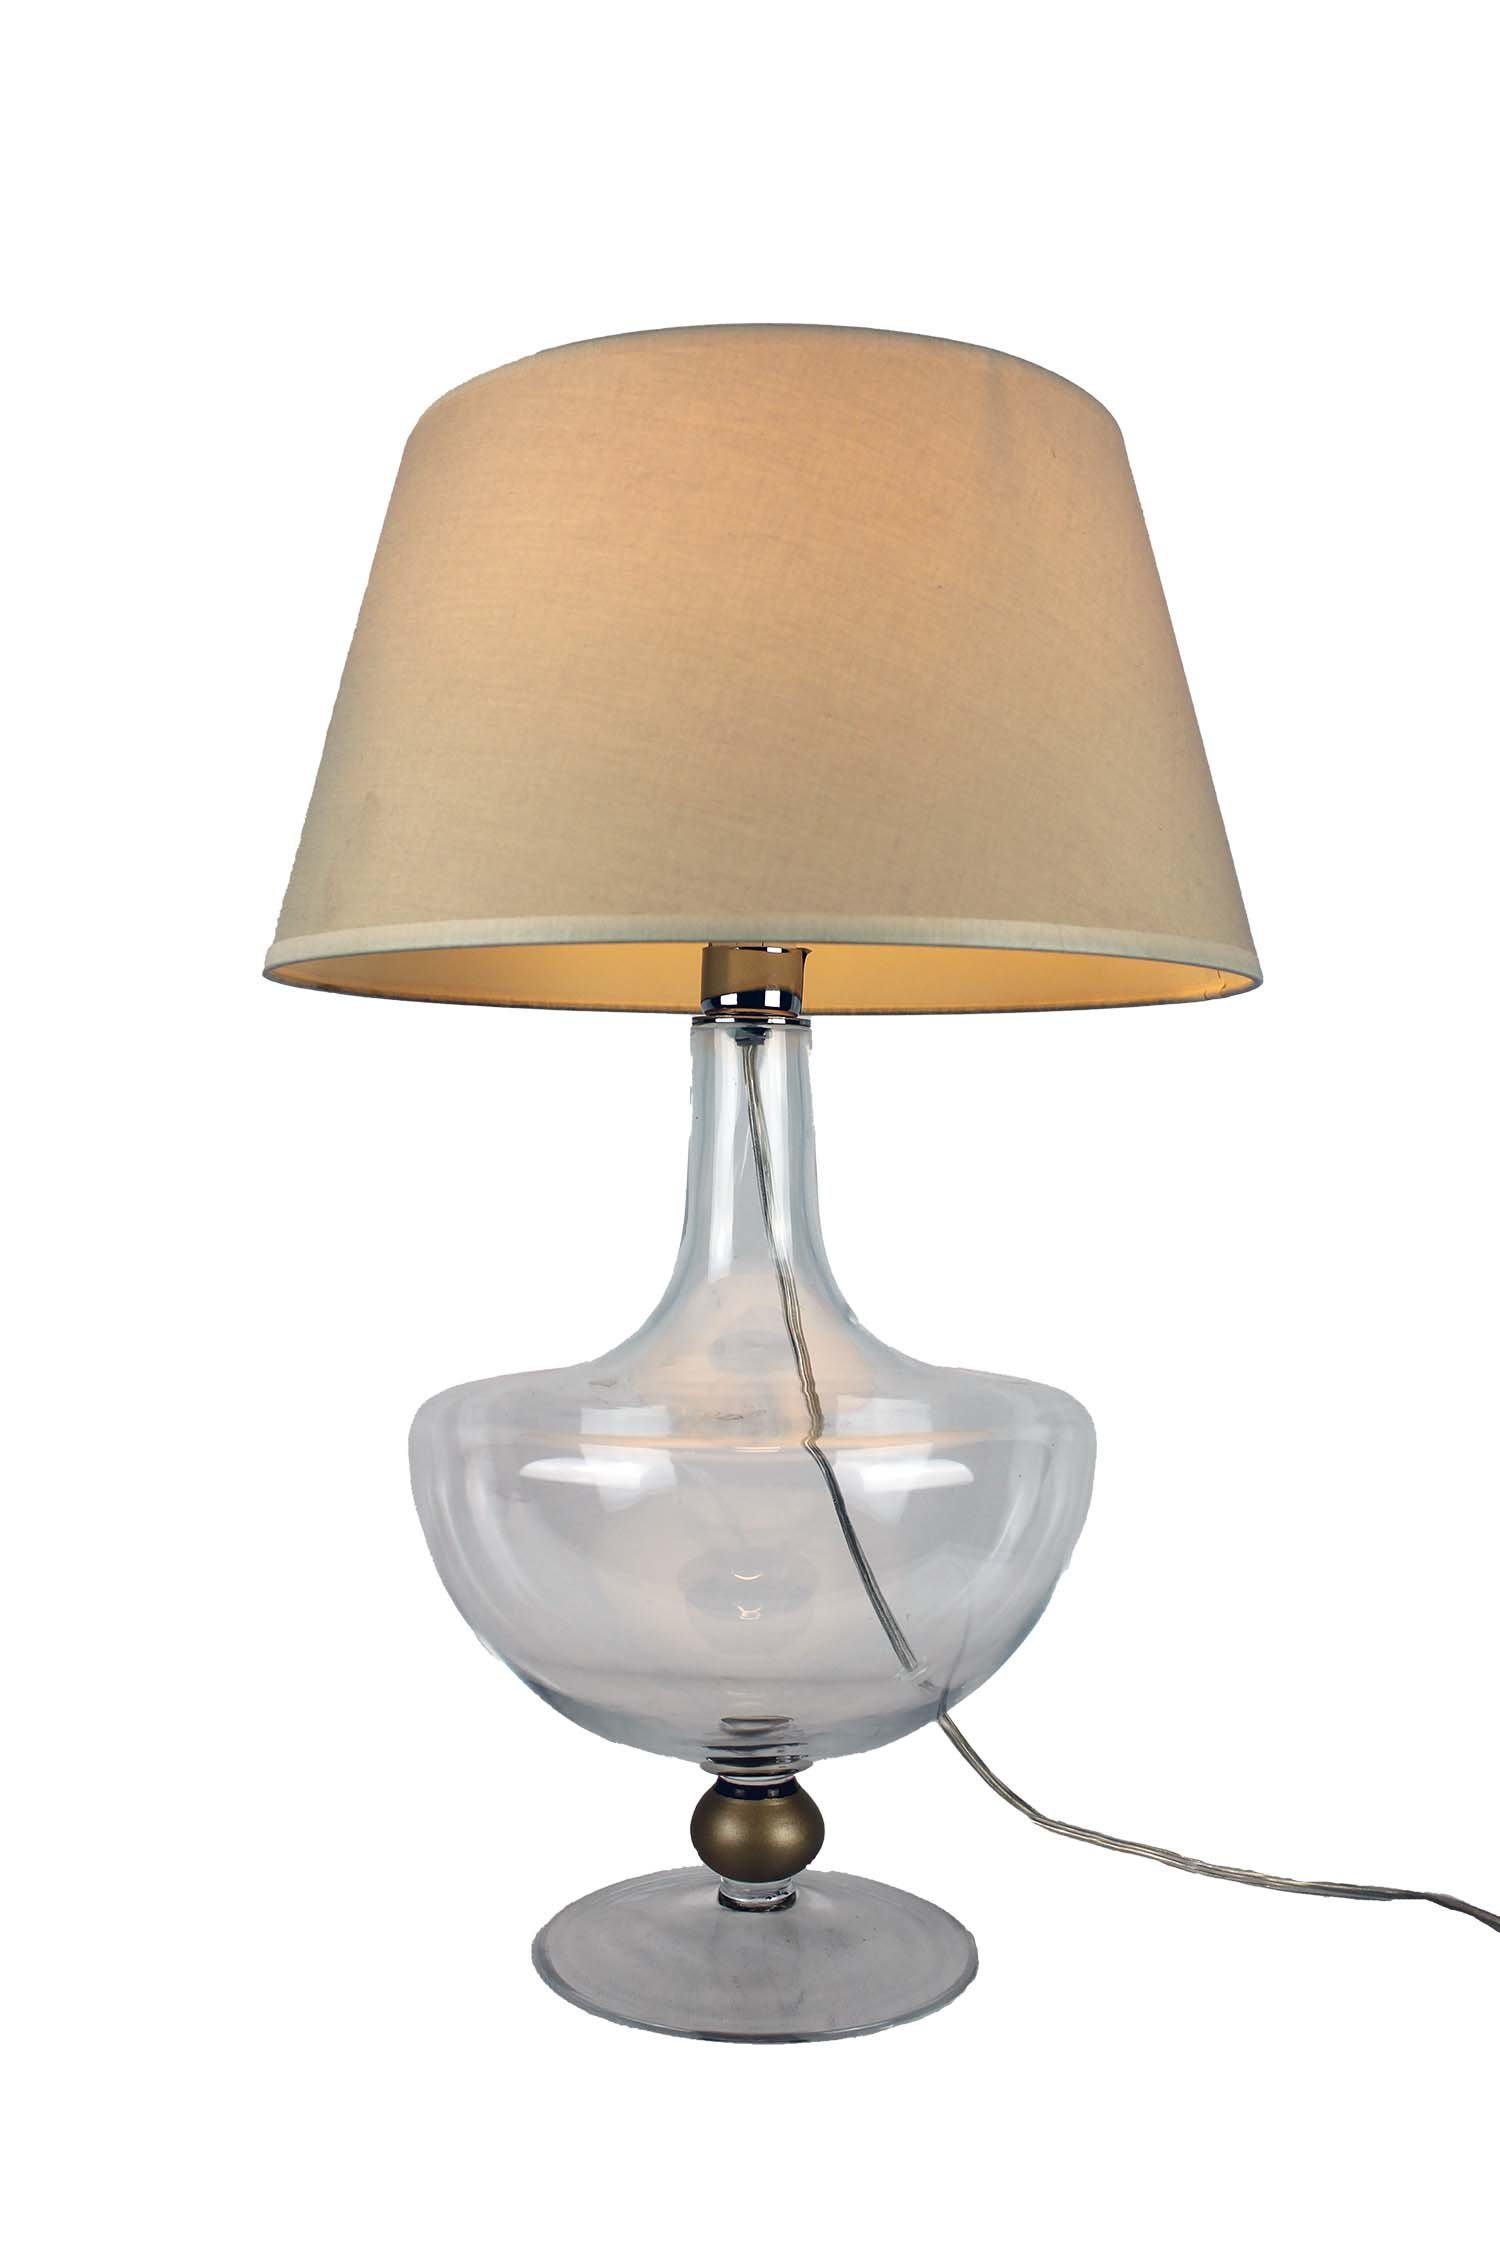 Signature Home Collection Nachttischlampe Glaslampe warmweiß, klassischen Lampenschirm, mit klassisch Glaslampe bauchig Leuchtmittel, Stil klar ohne im